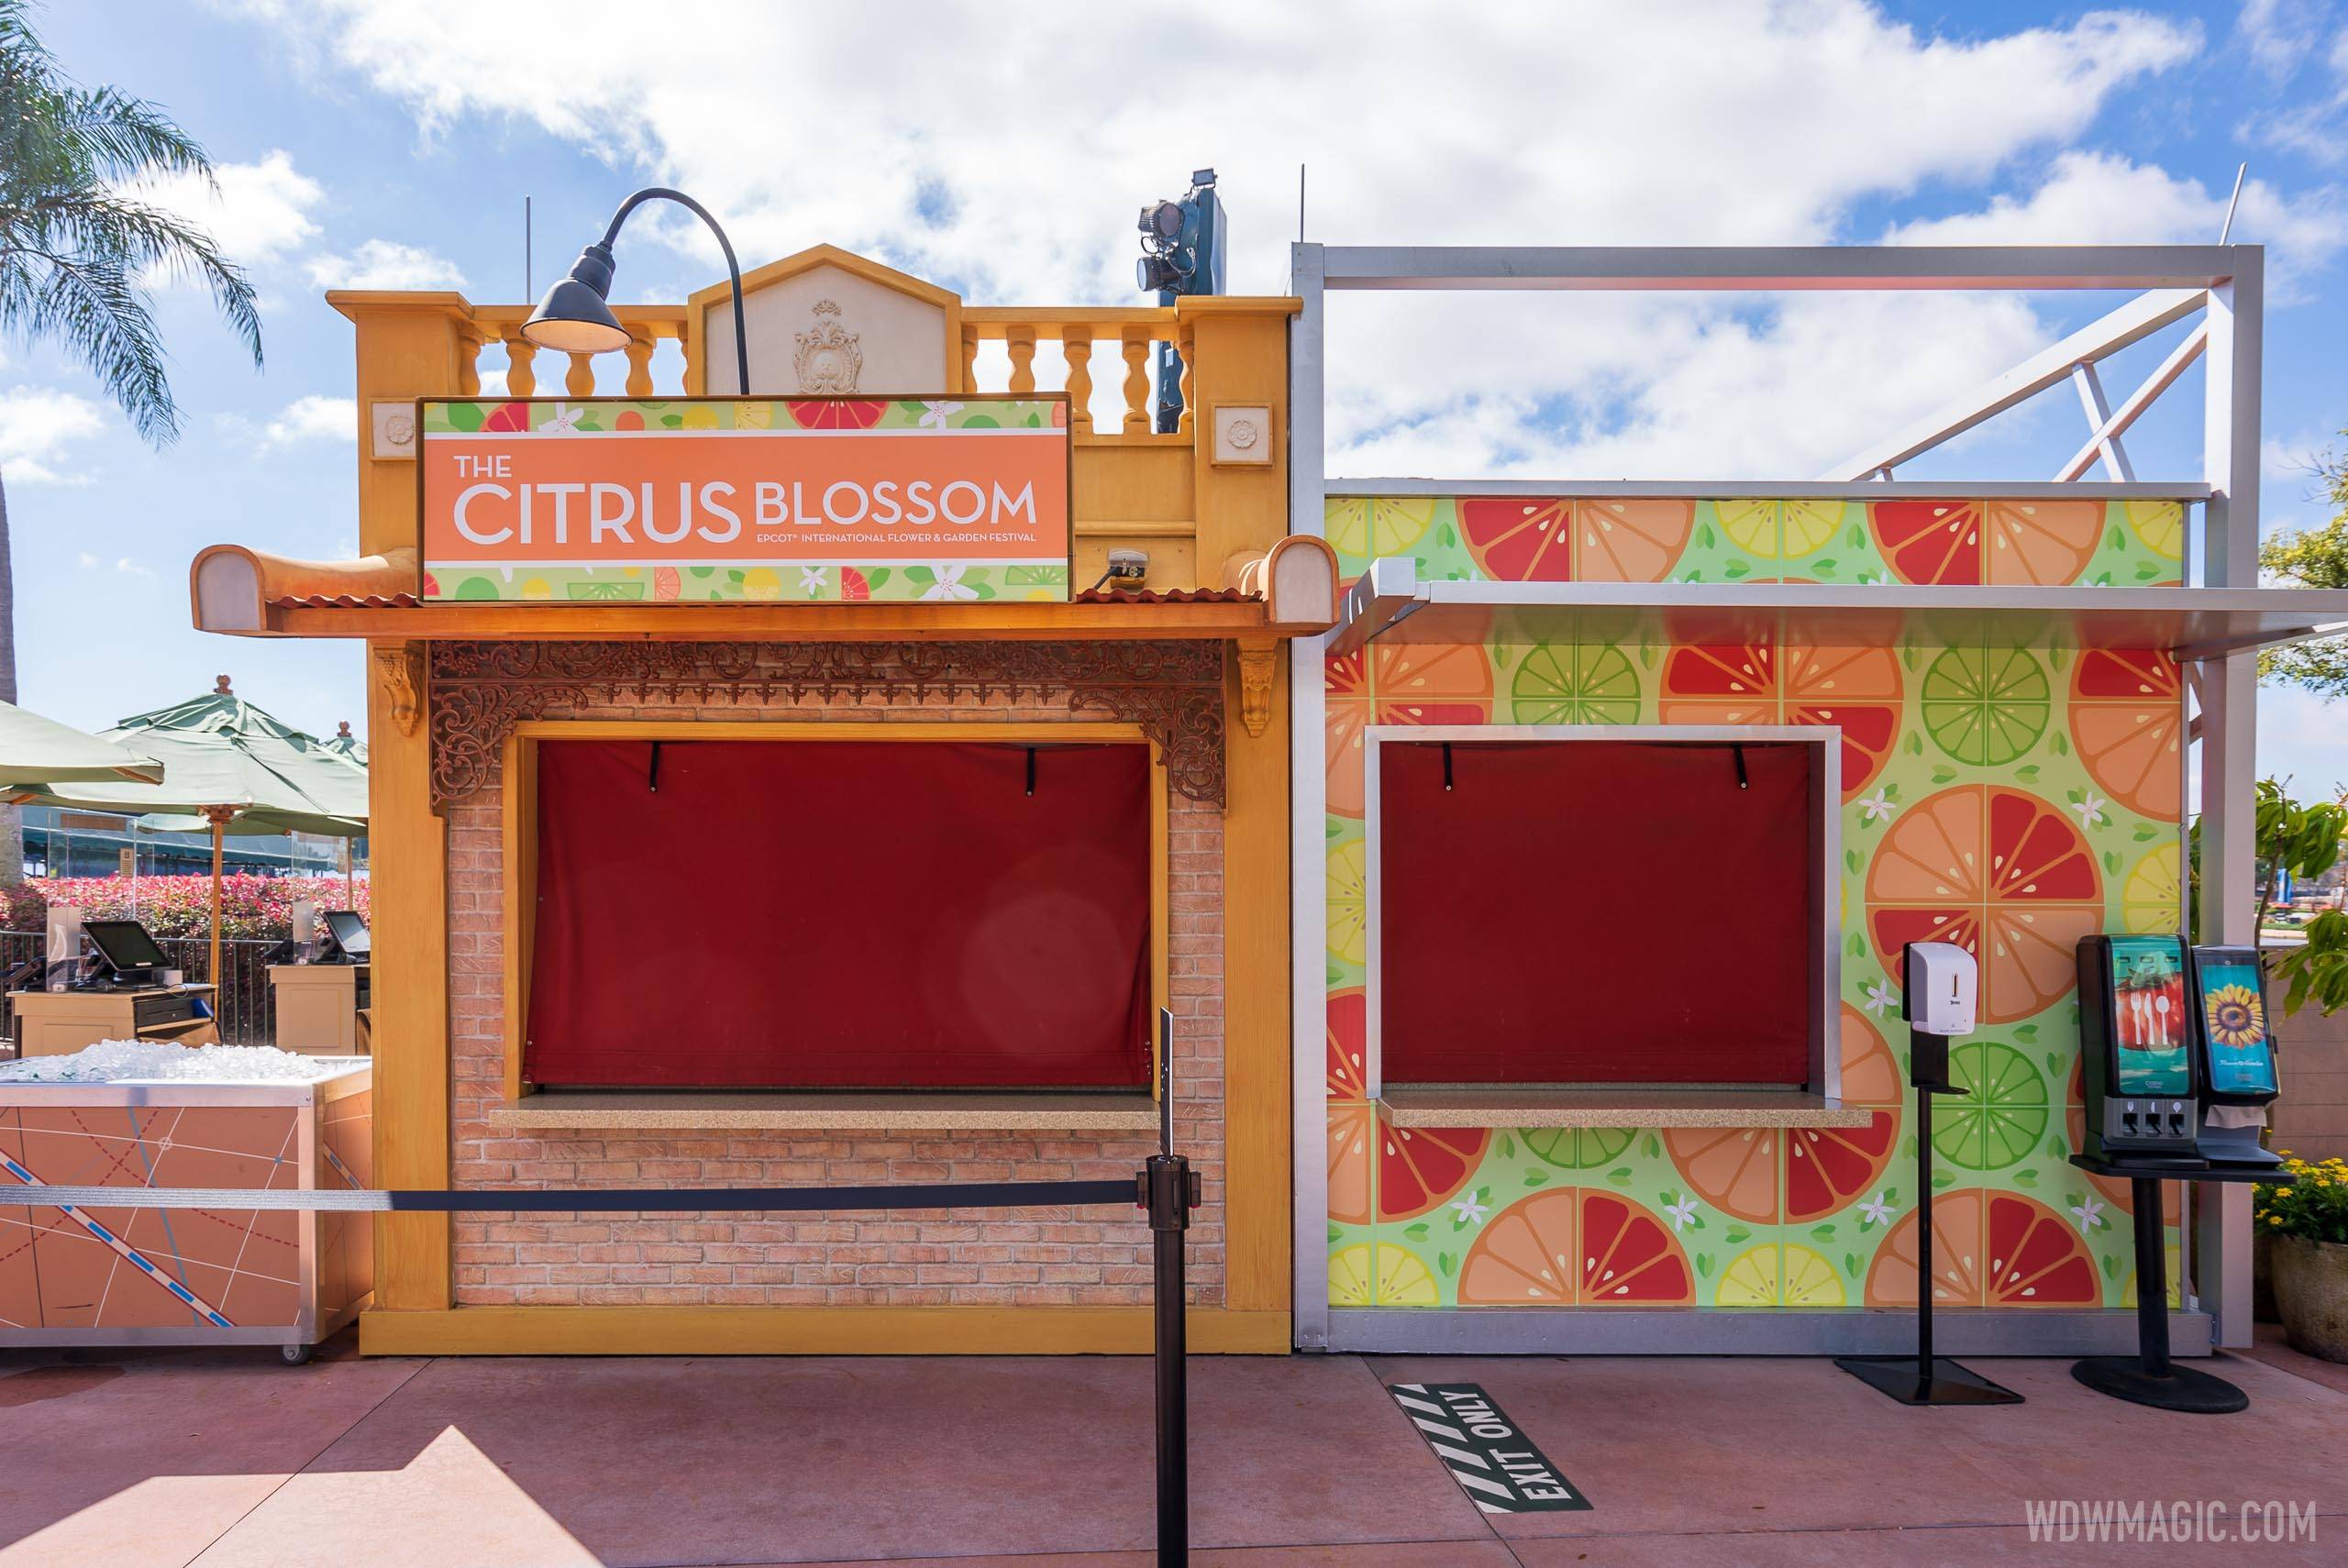 The Citrus Blossom kiosk